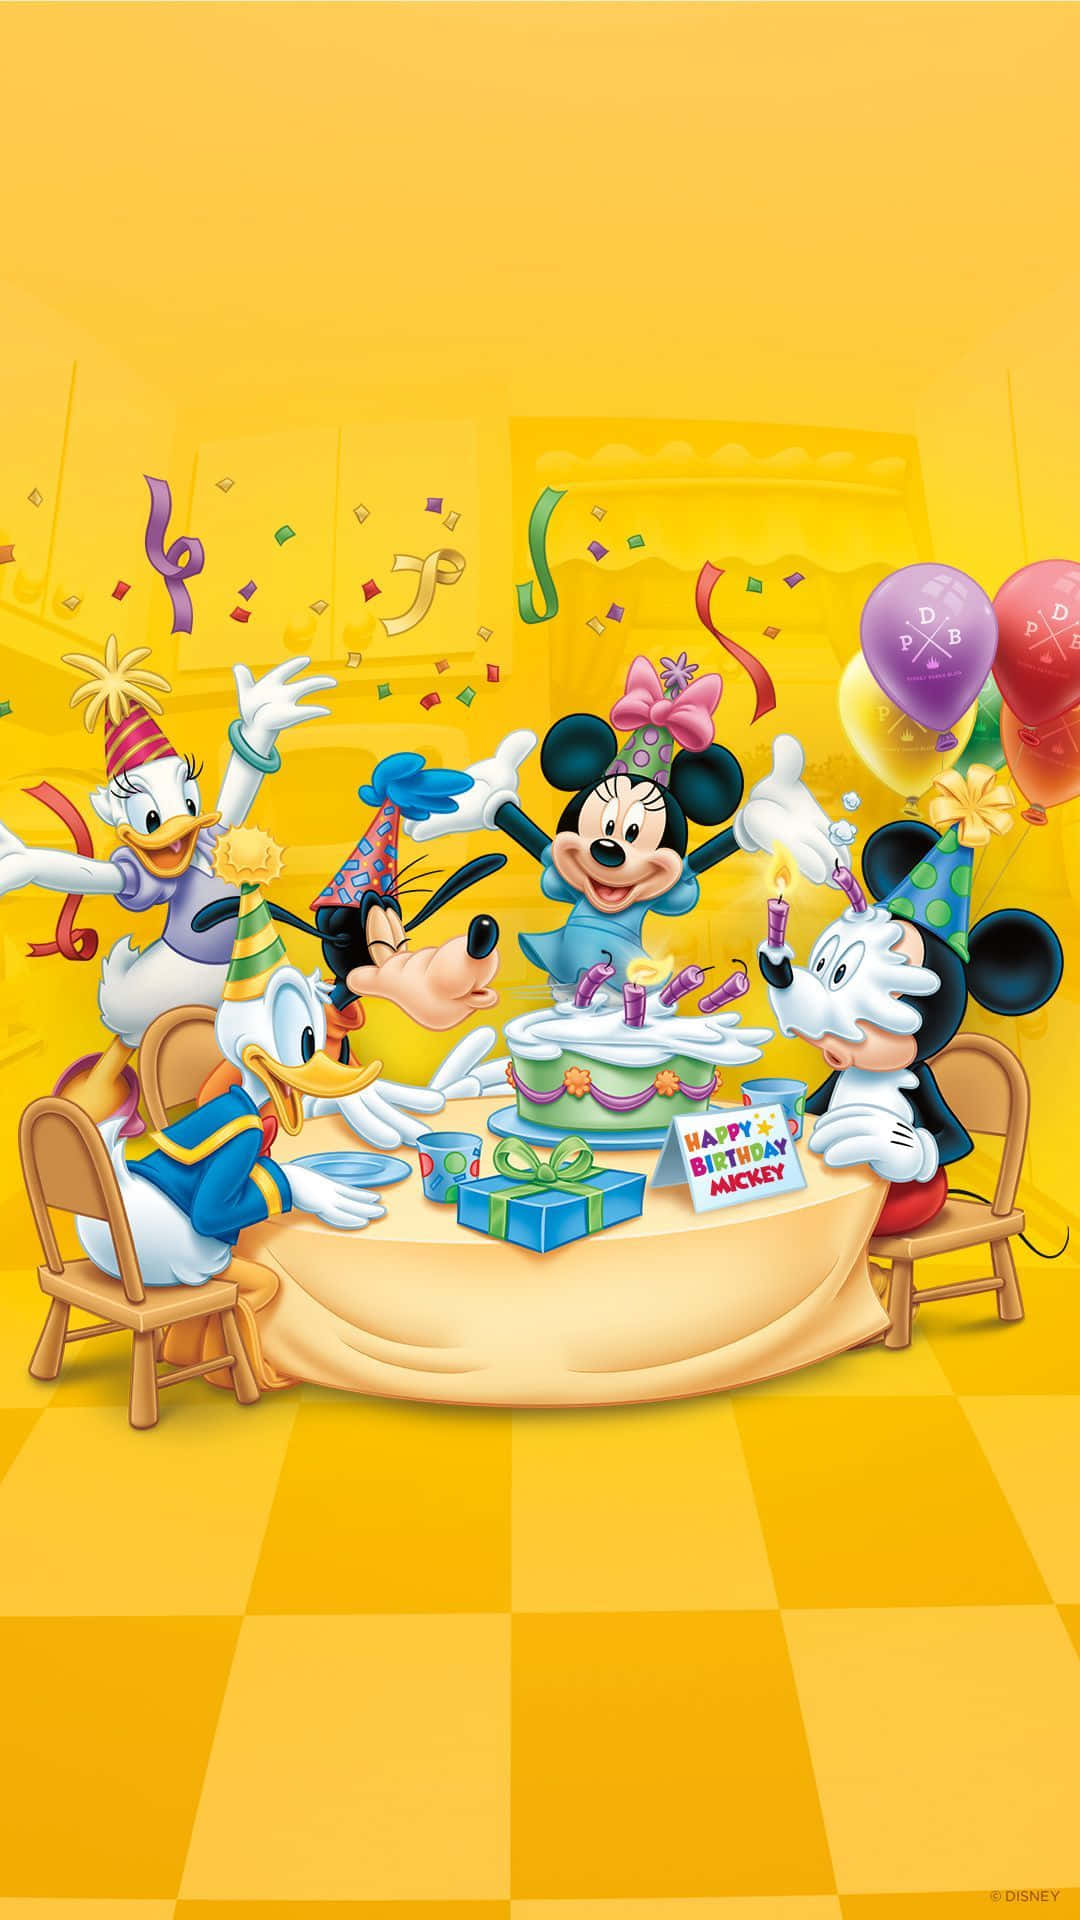 Disney Birthday 1080 X 1920